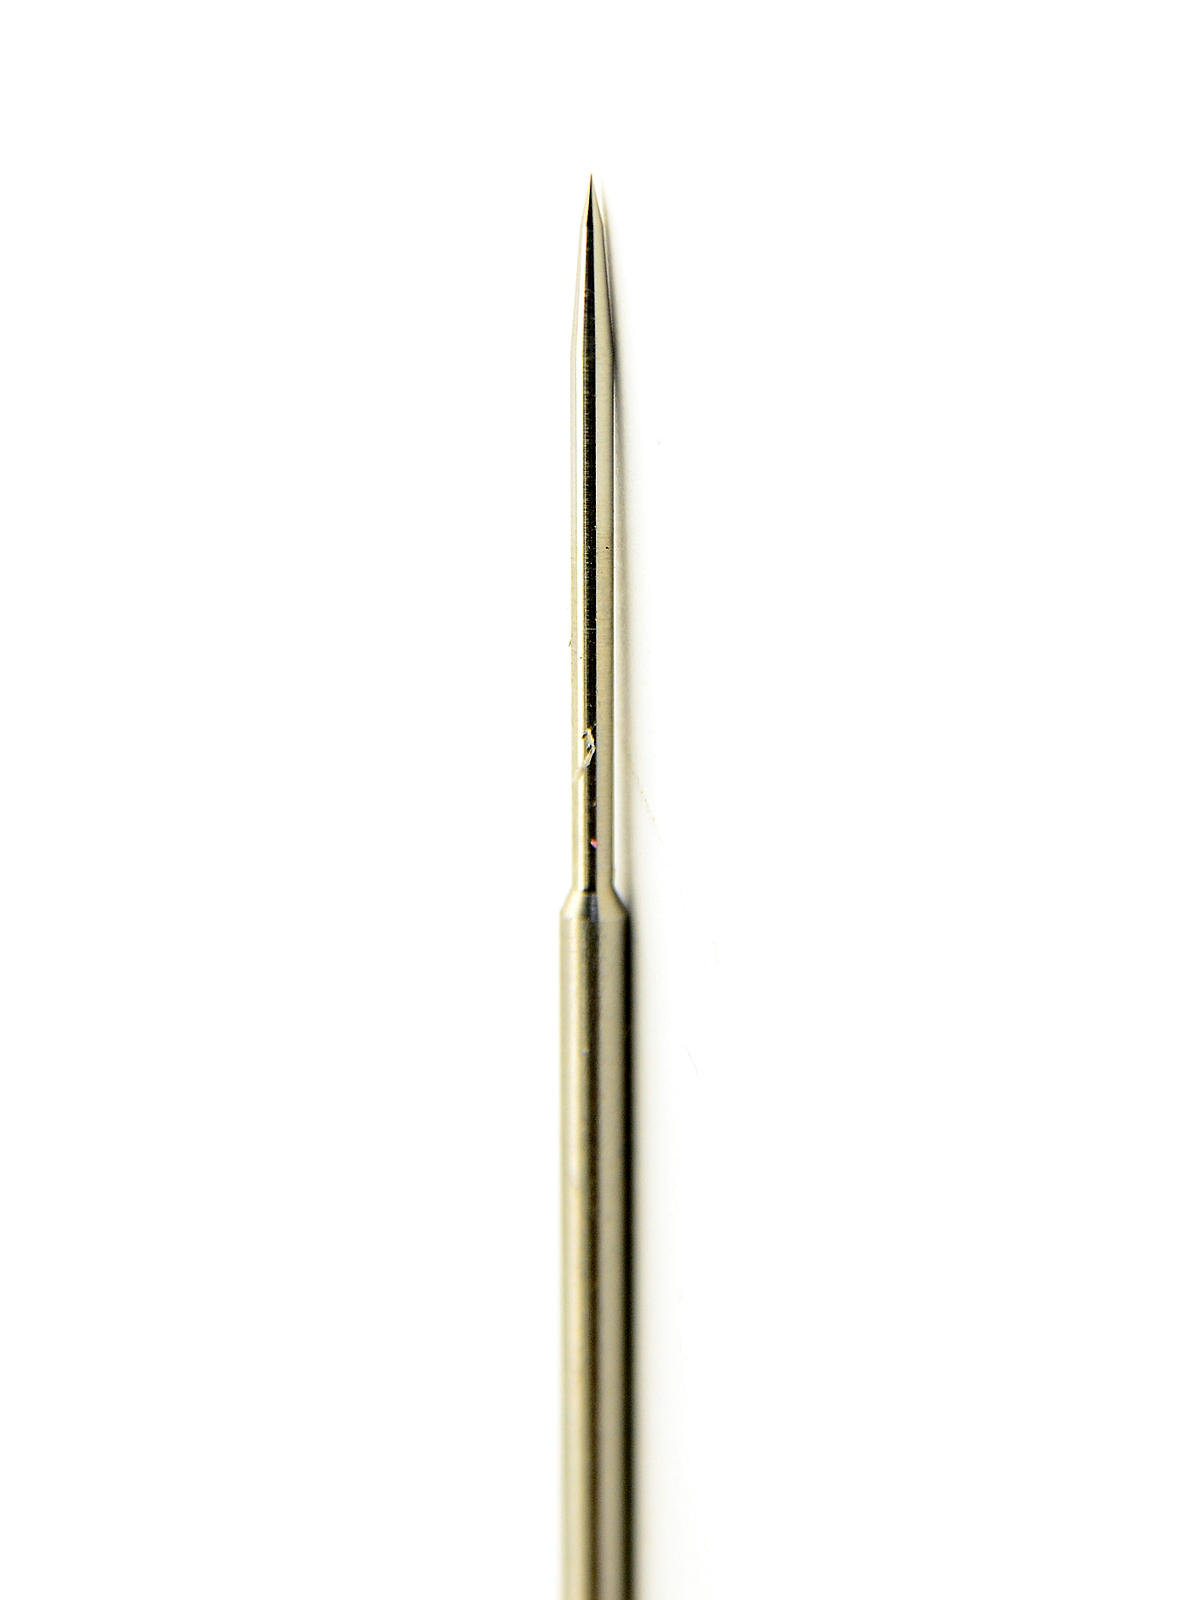 Model Vl Airbrush Needles Needle Vln 3, Medium